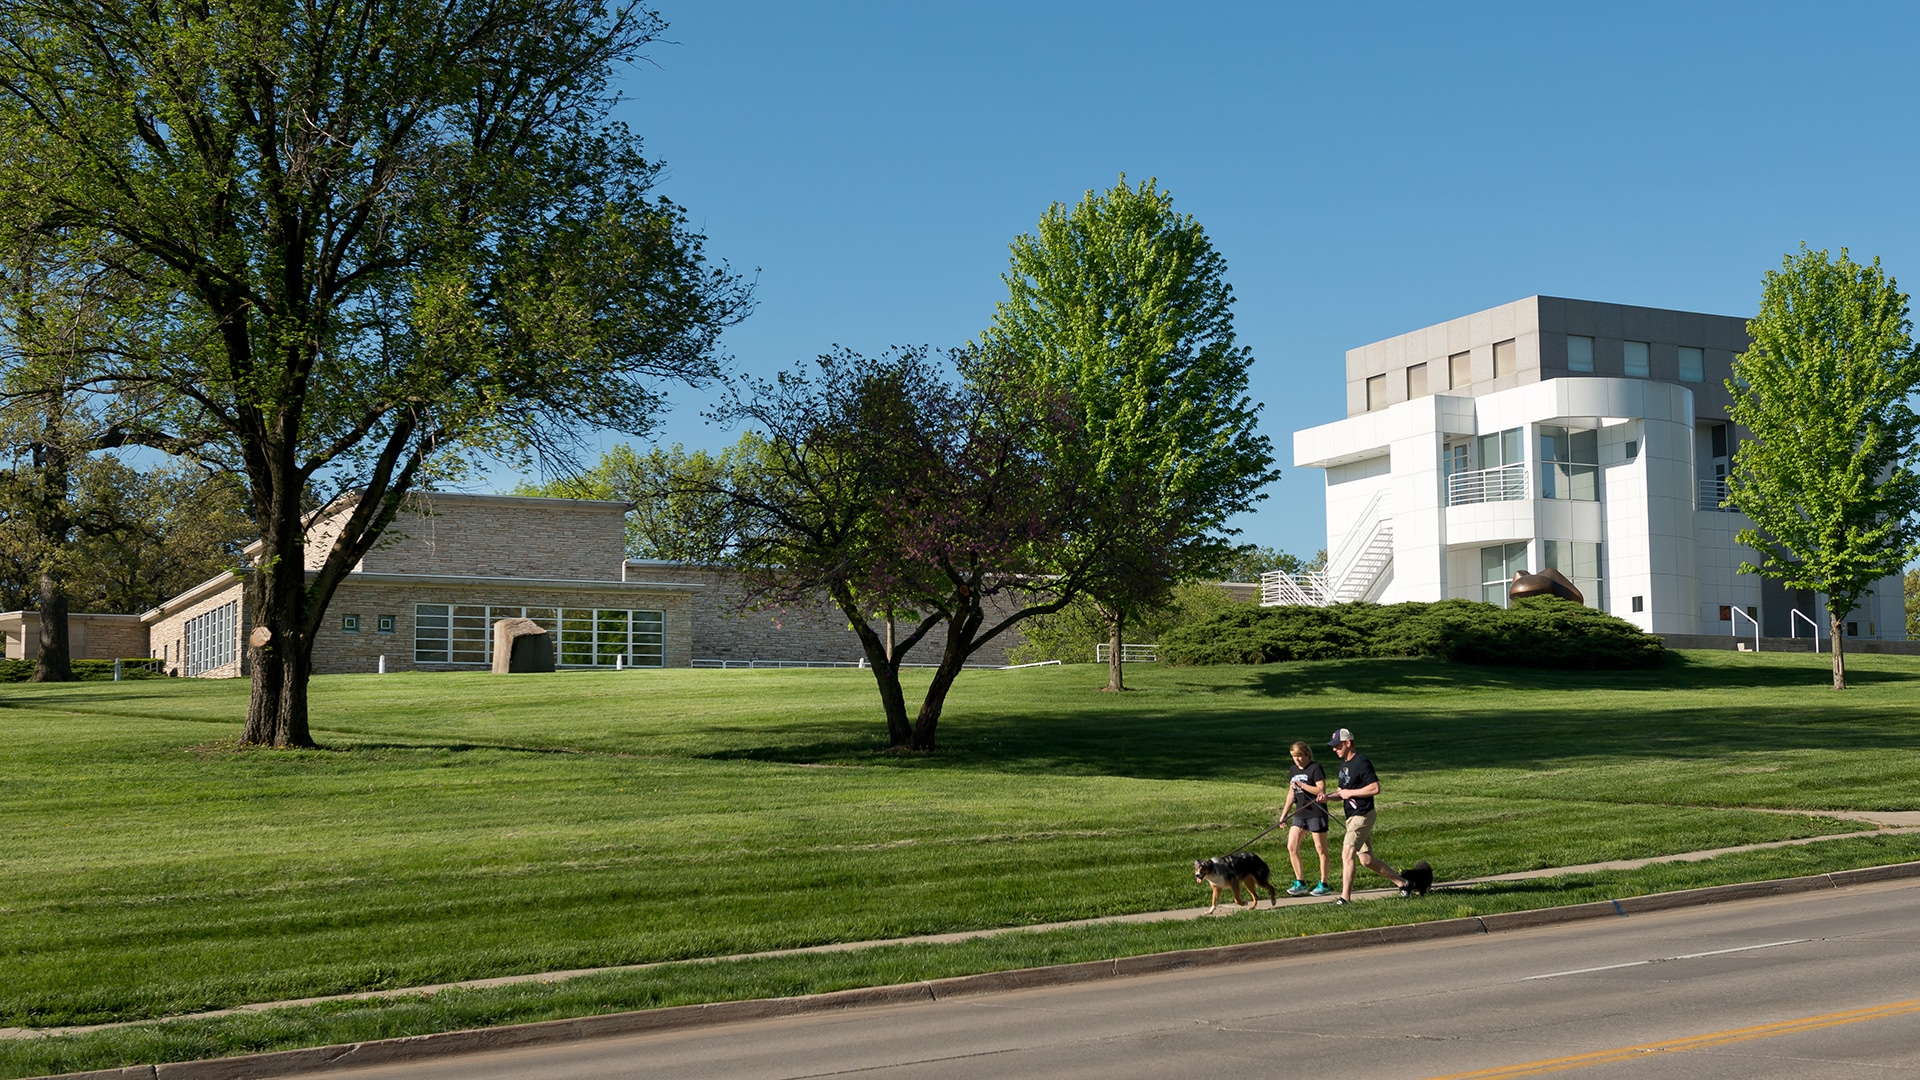 The Art Center Architecture Des Moines Art Center